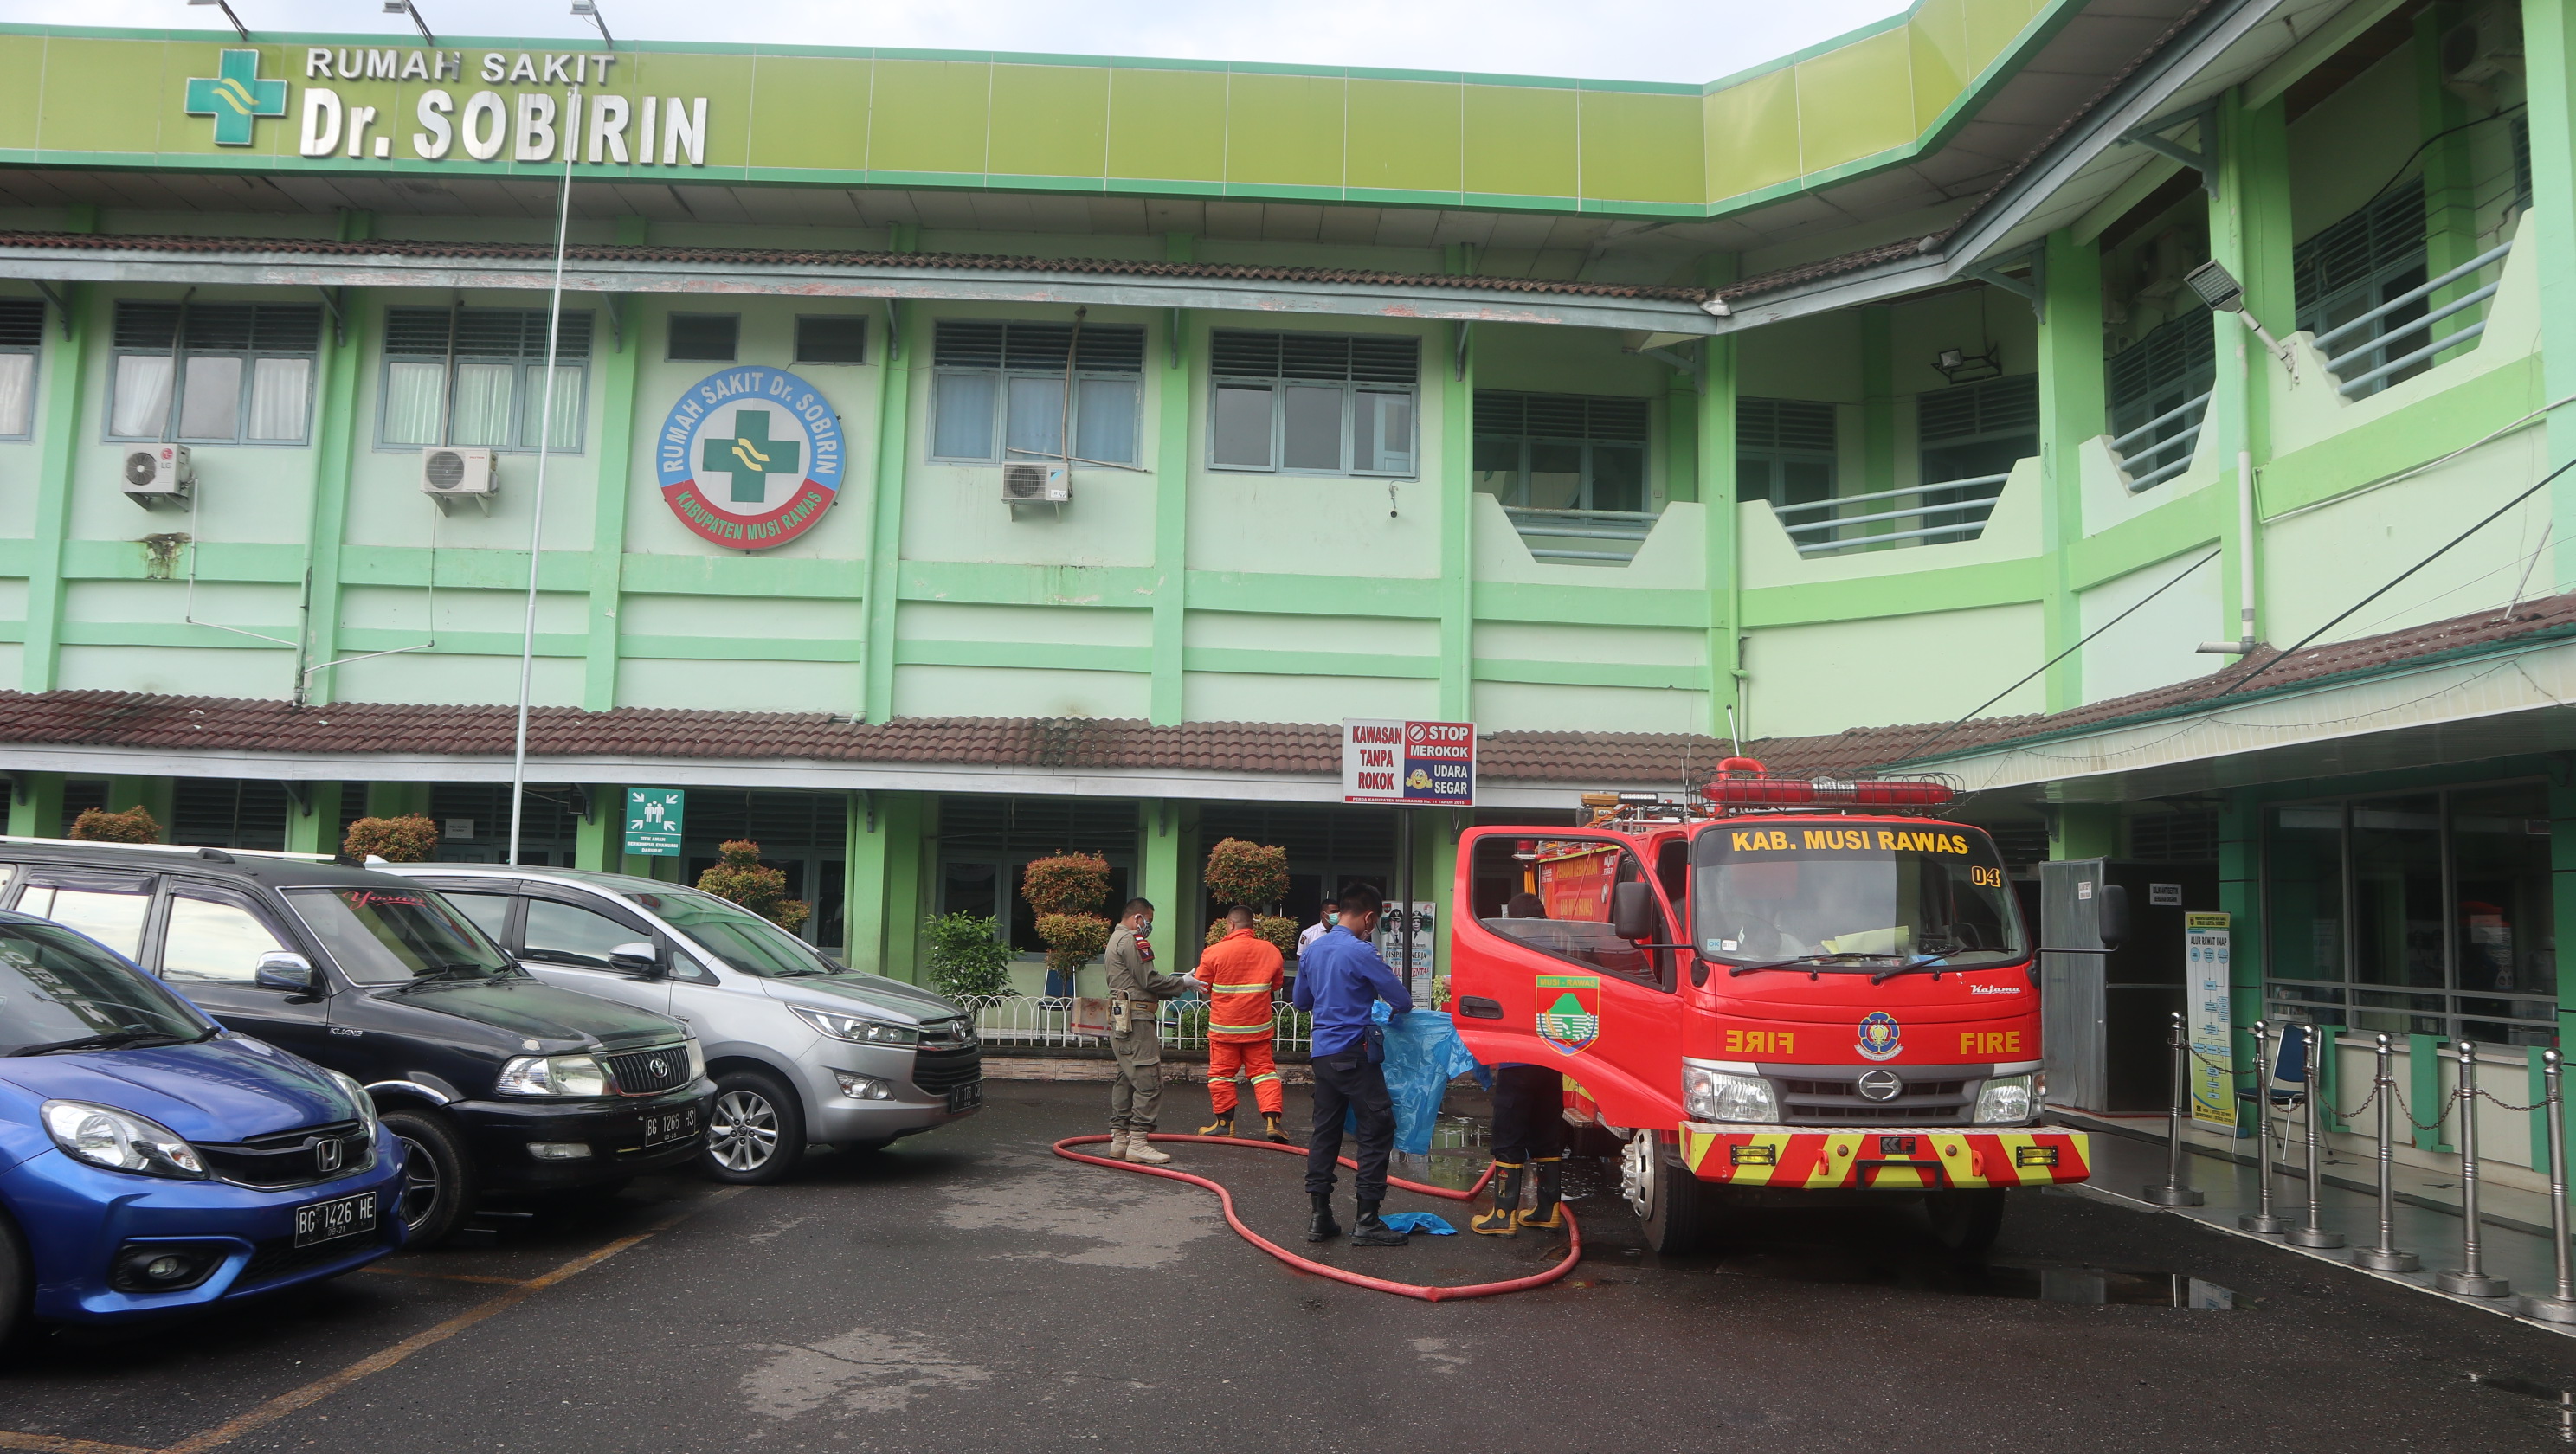 Penyemprotan Disinfektan. Di Area Rumah Sakit Dr. Sobirin Kabupaten Musi Rawas oleh Petugas dari Dinas Pemadam Kebakaran dan Satuan Polisi Pamong Praja Kabupaten Musi Rawas.